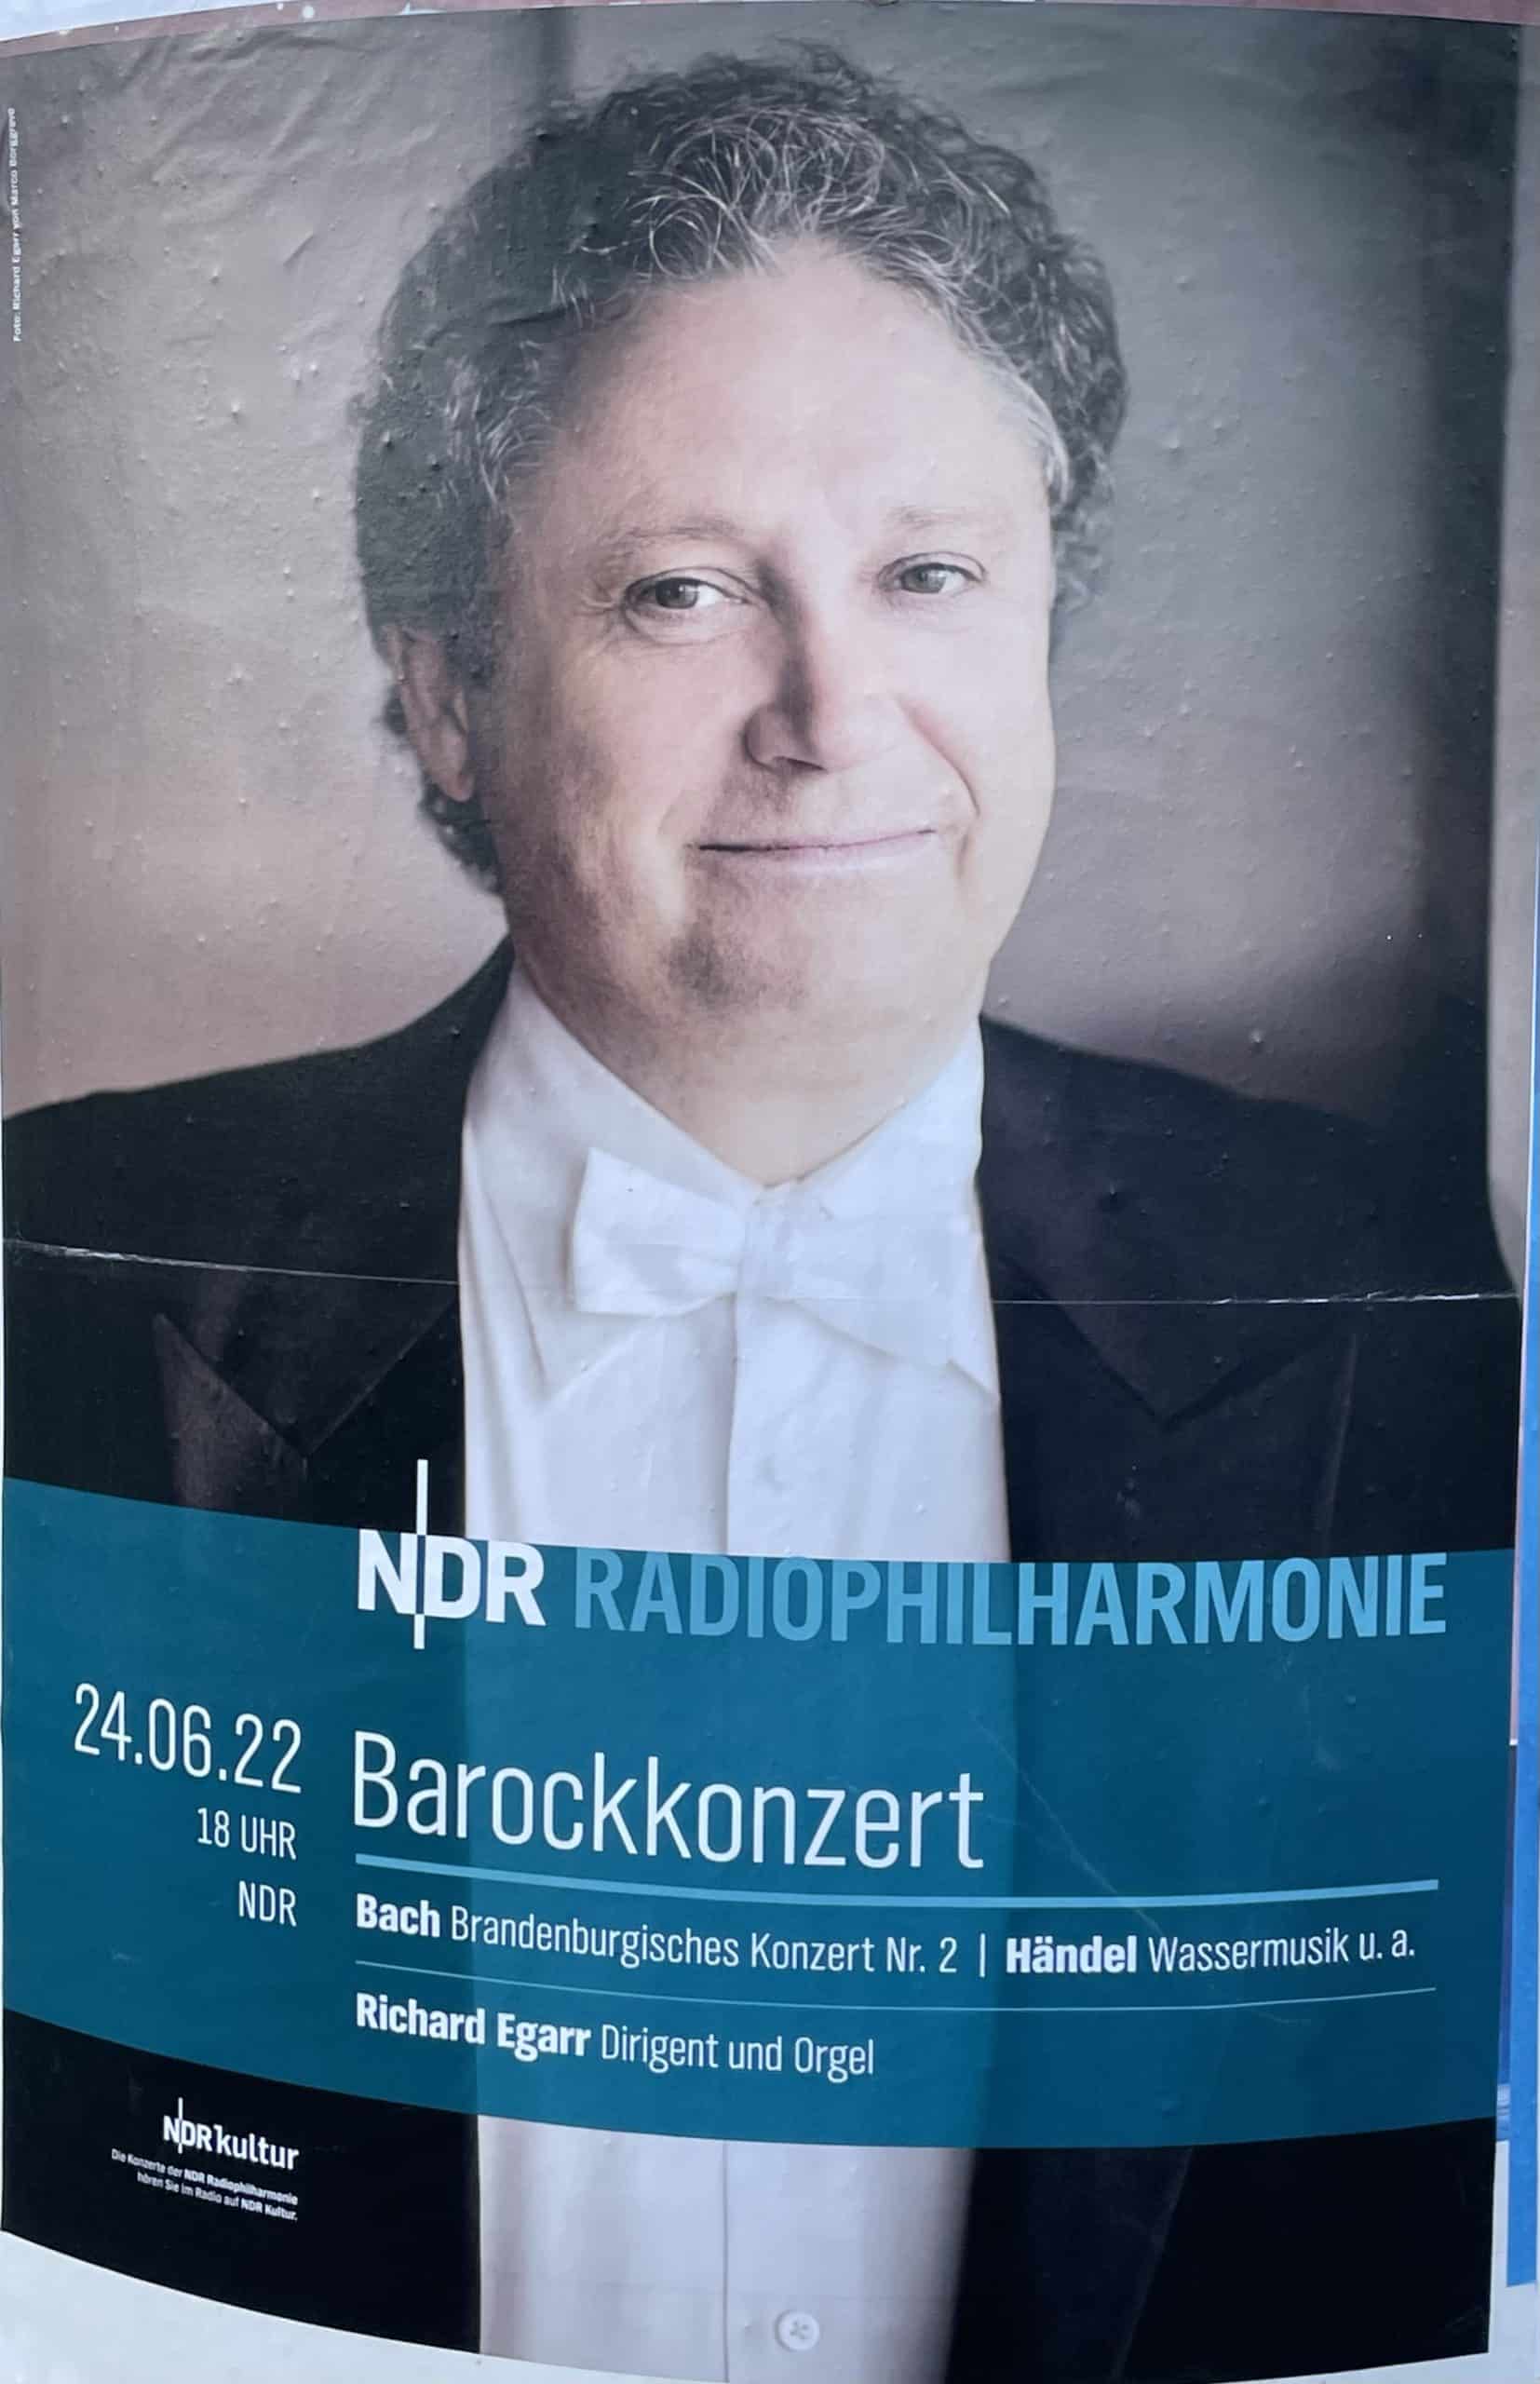 NDR Philharmonie Barockkonzert